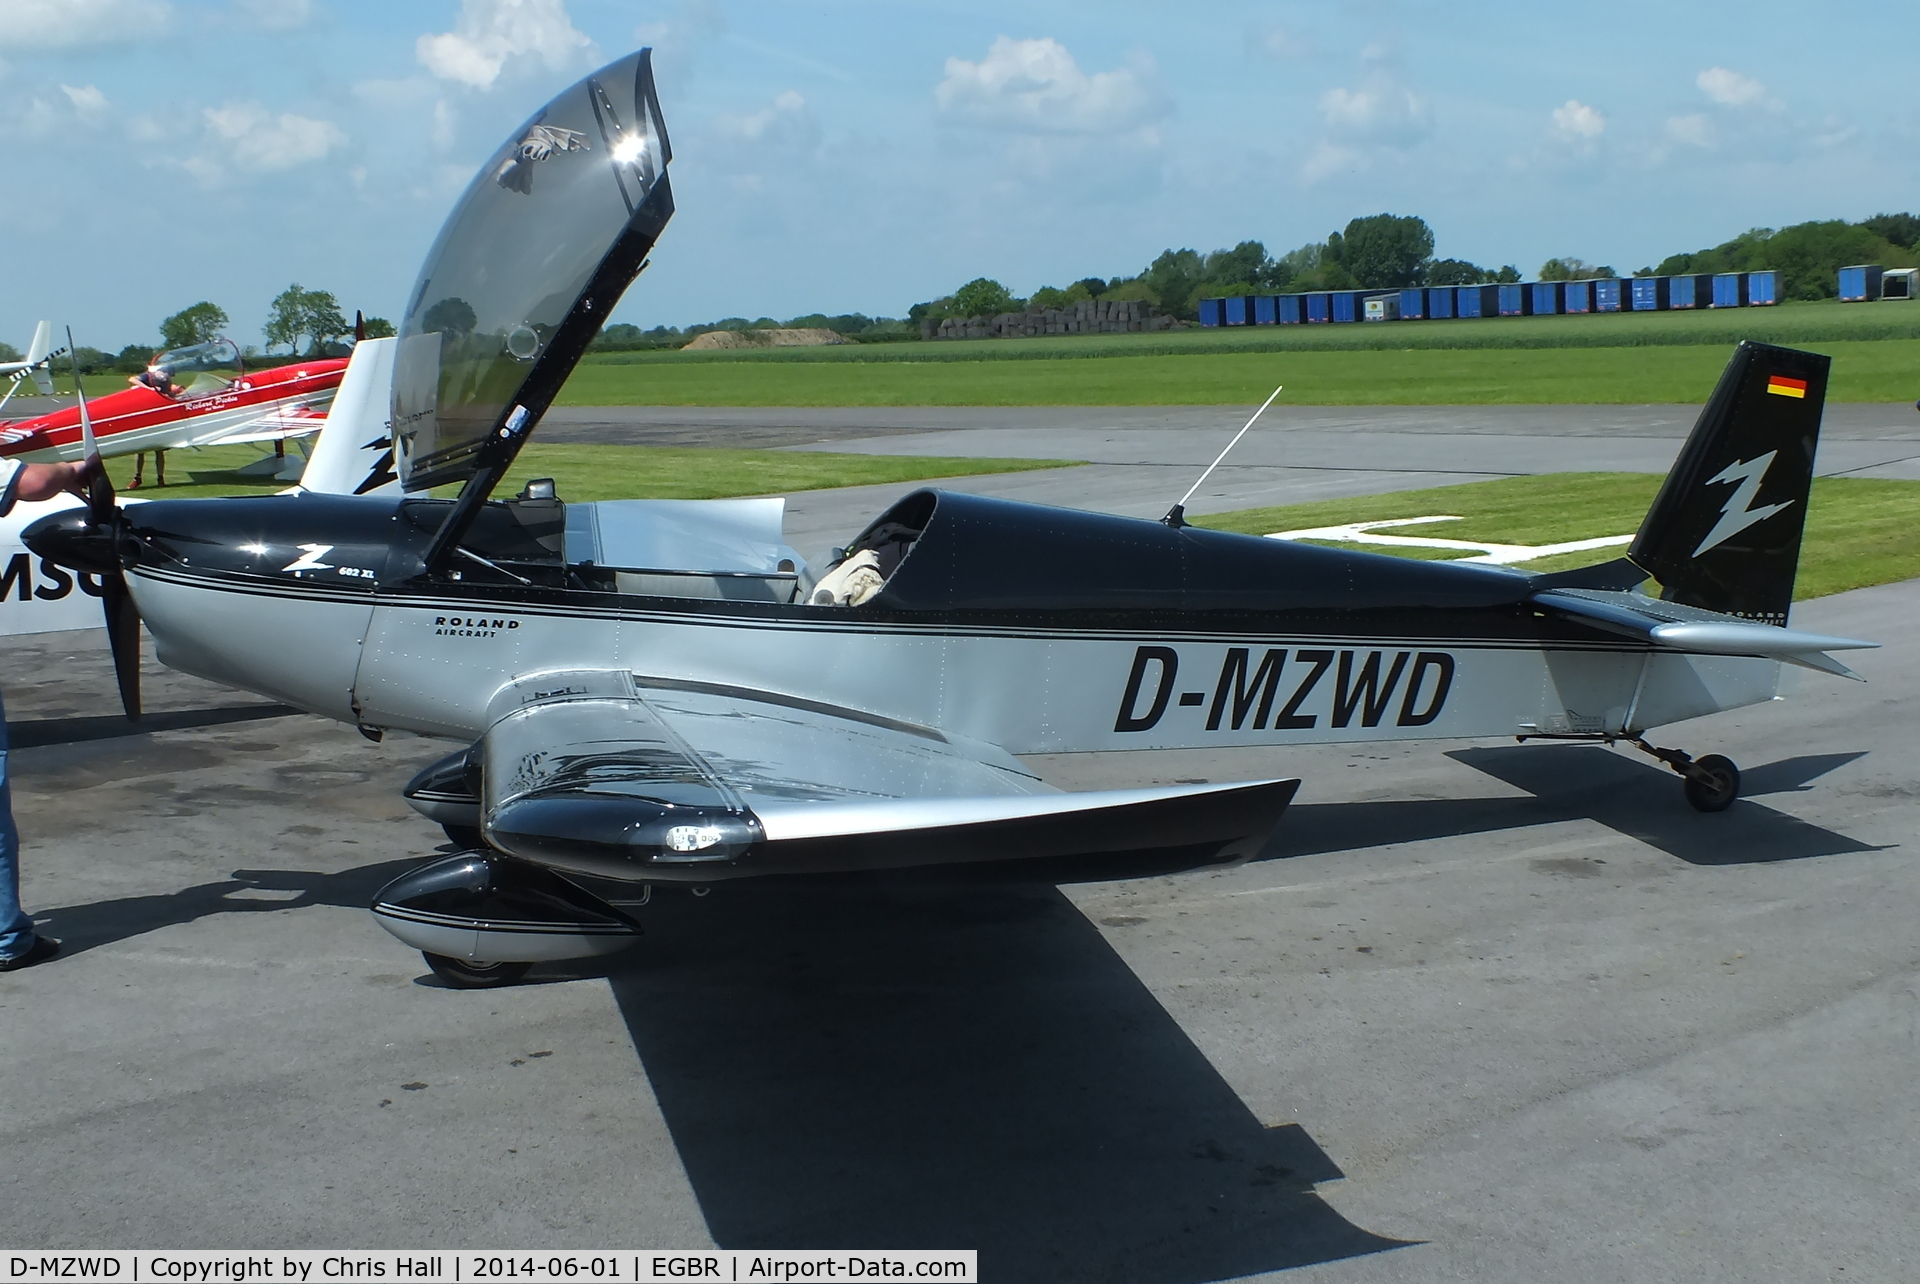 D-MZWD, 2006 Roland Z-602 XL C/N DX-9514, at Breighton's Open Cockpit & Biplane Fly-in, 2014